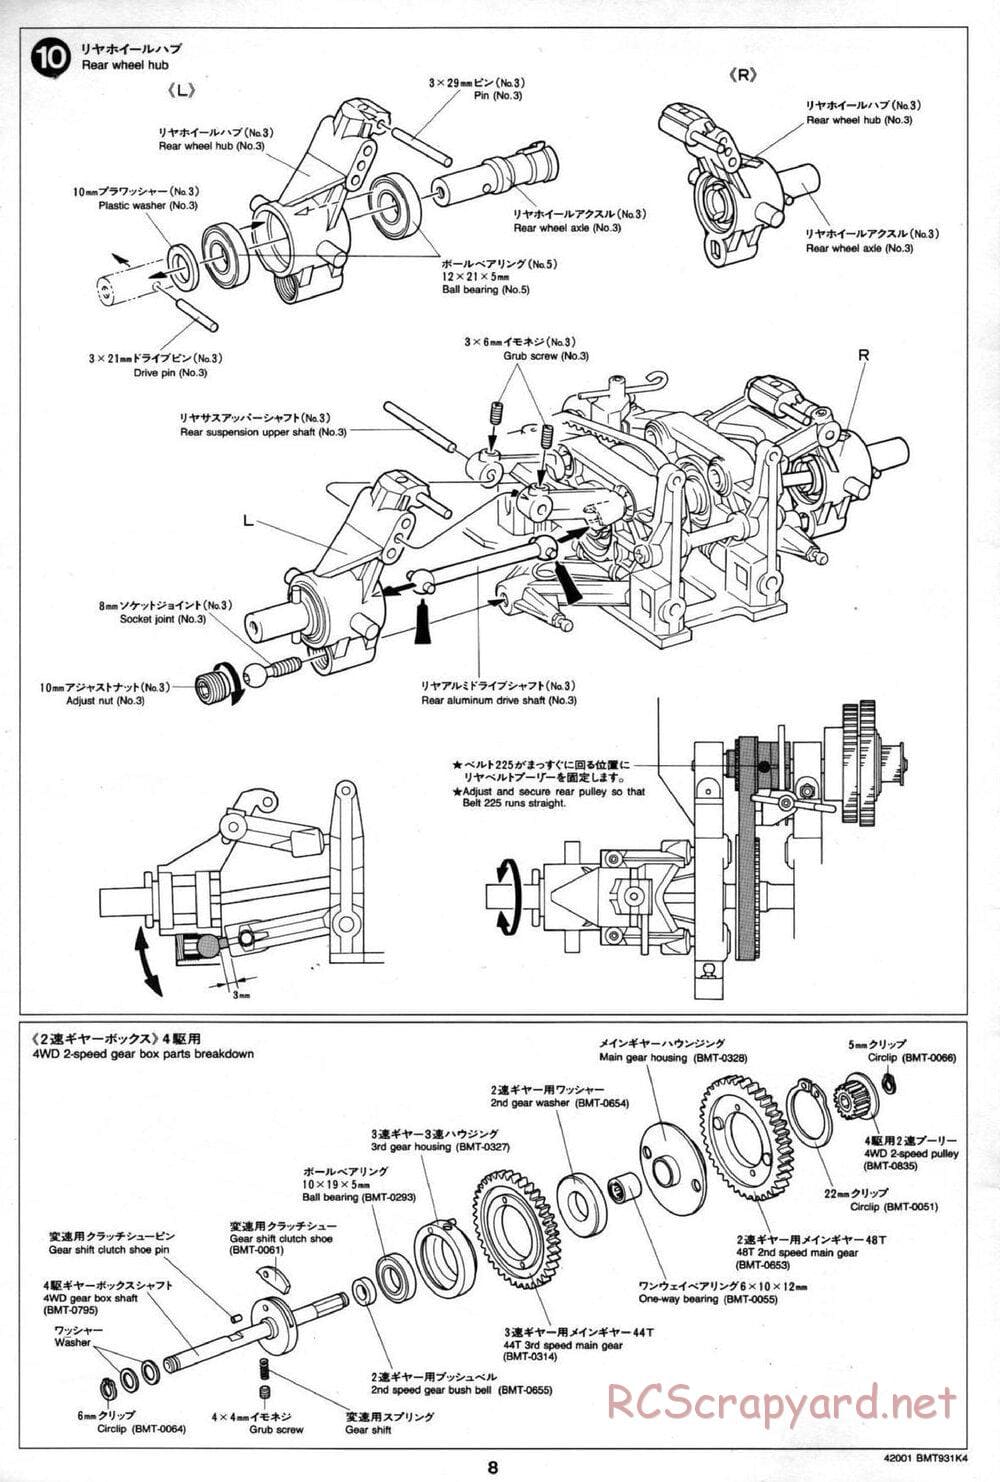 Tamiya - BMT 931 K4 Racing Chassis - Manual - Page 8